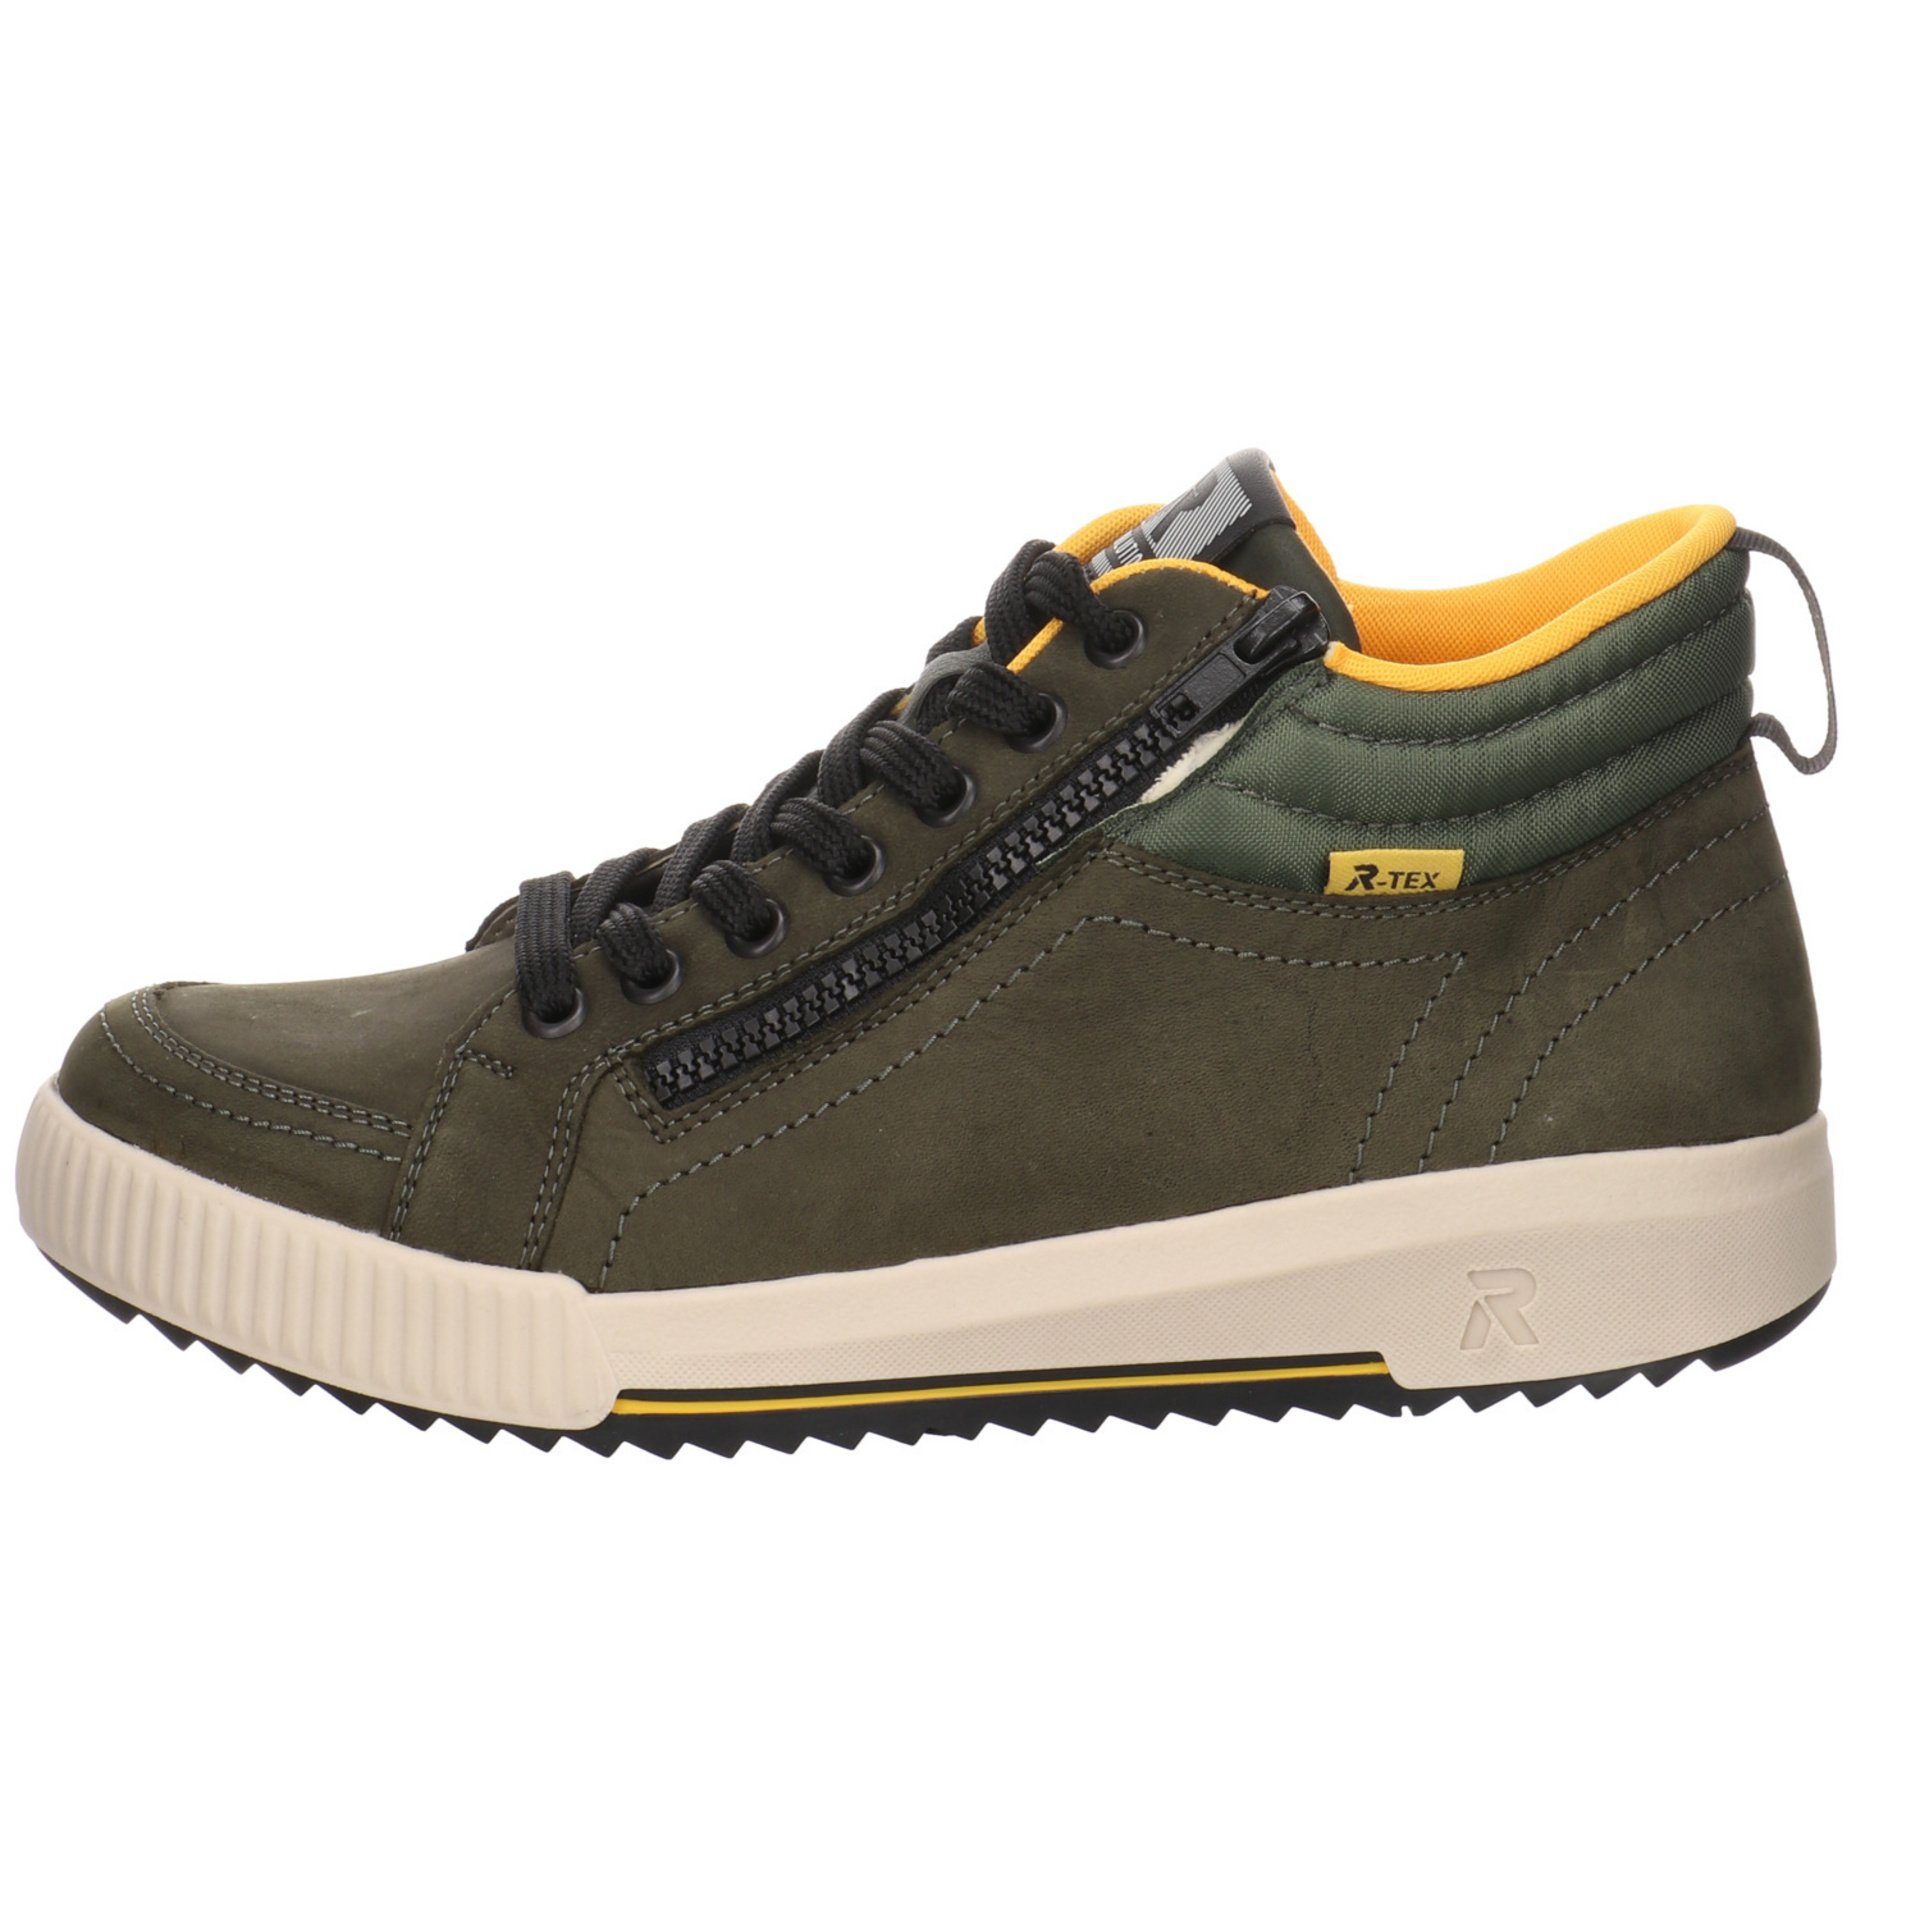 Stiefeletten Rieker Boots Damen moor/olive/forest Leder-/Textilkombination R-Evolution Schuhe Schnürstiefelette